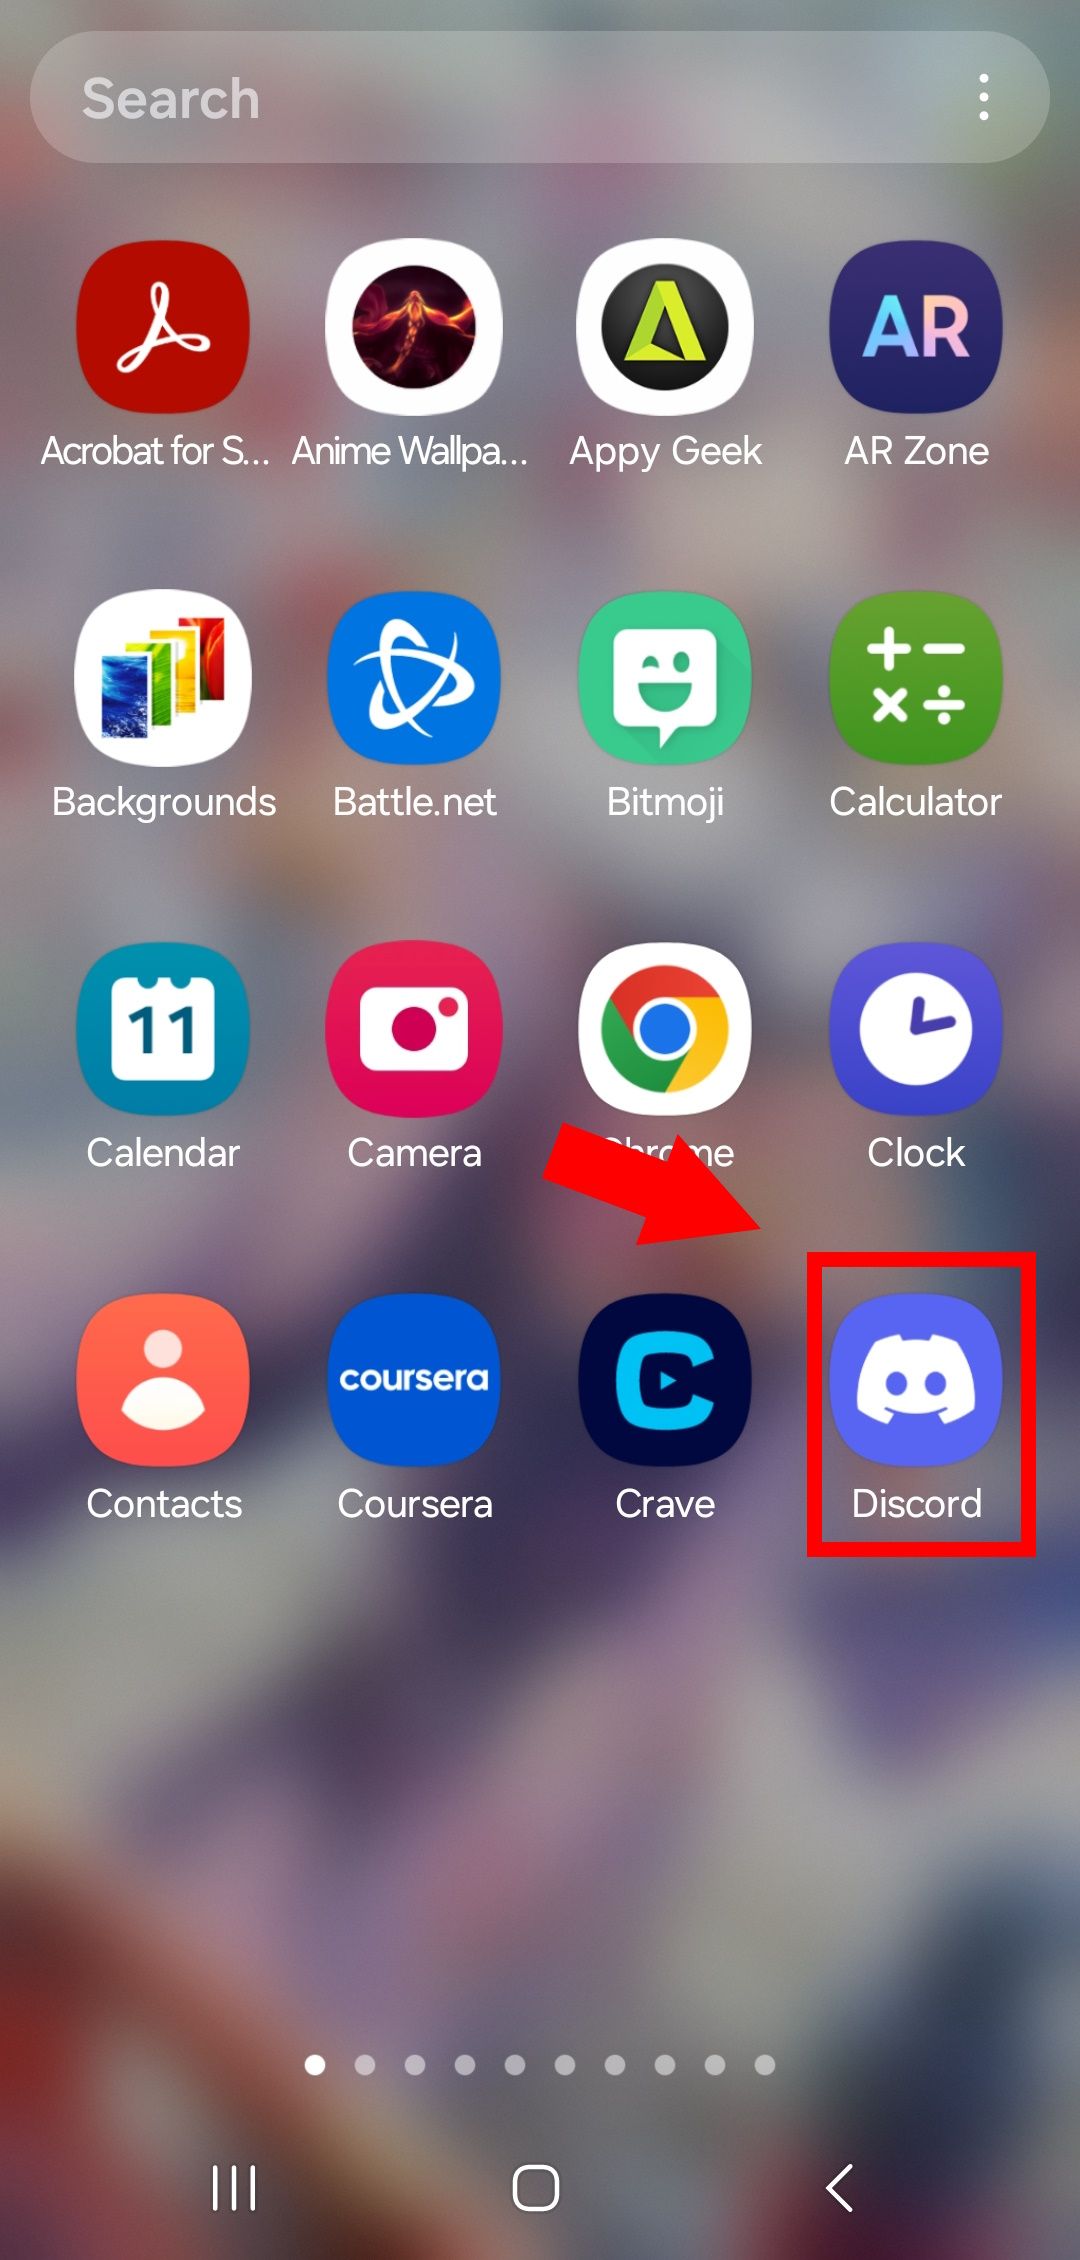 seta sólida vermelha apontando para o contorno do retângulo vermelho sobre o ícone do aplicativo discord na página inicial do Android